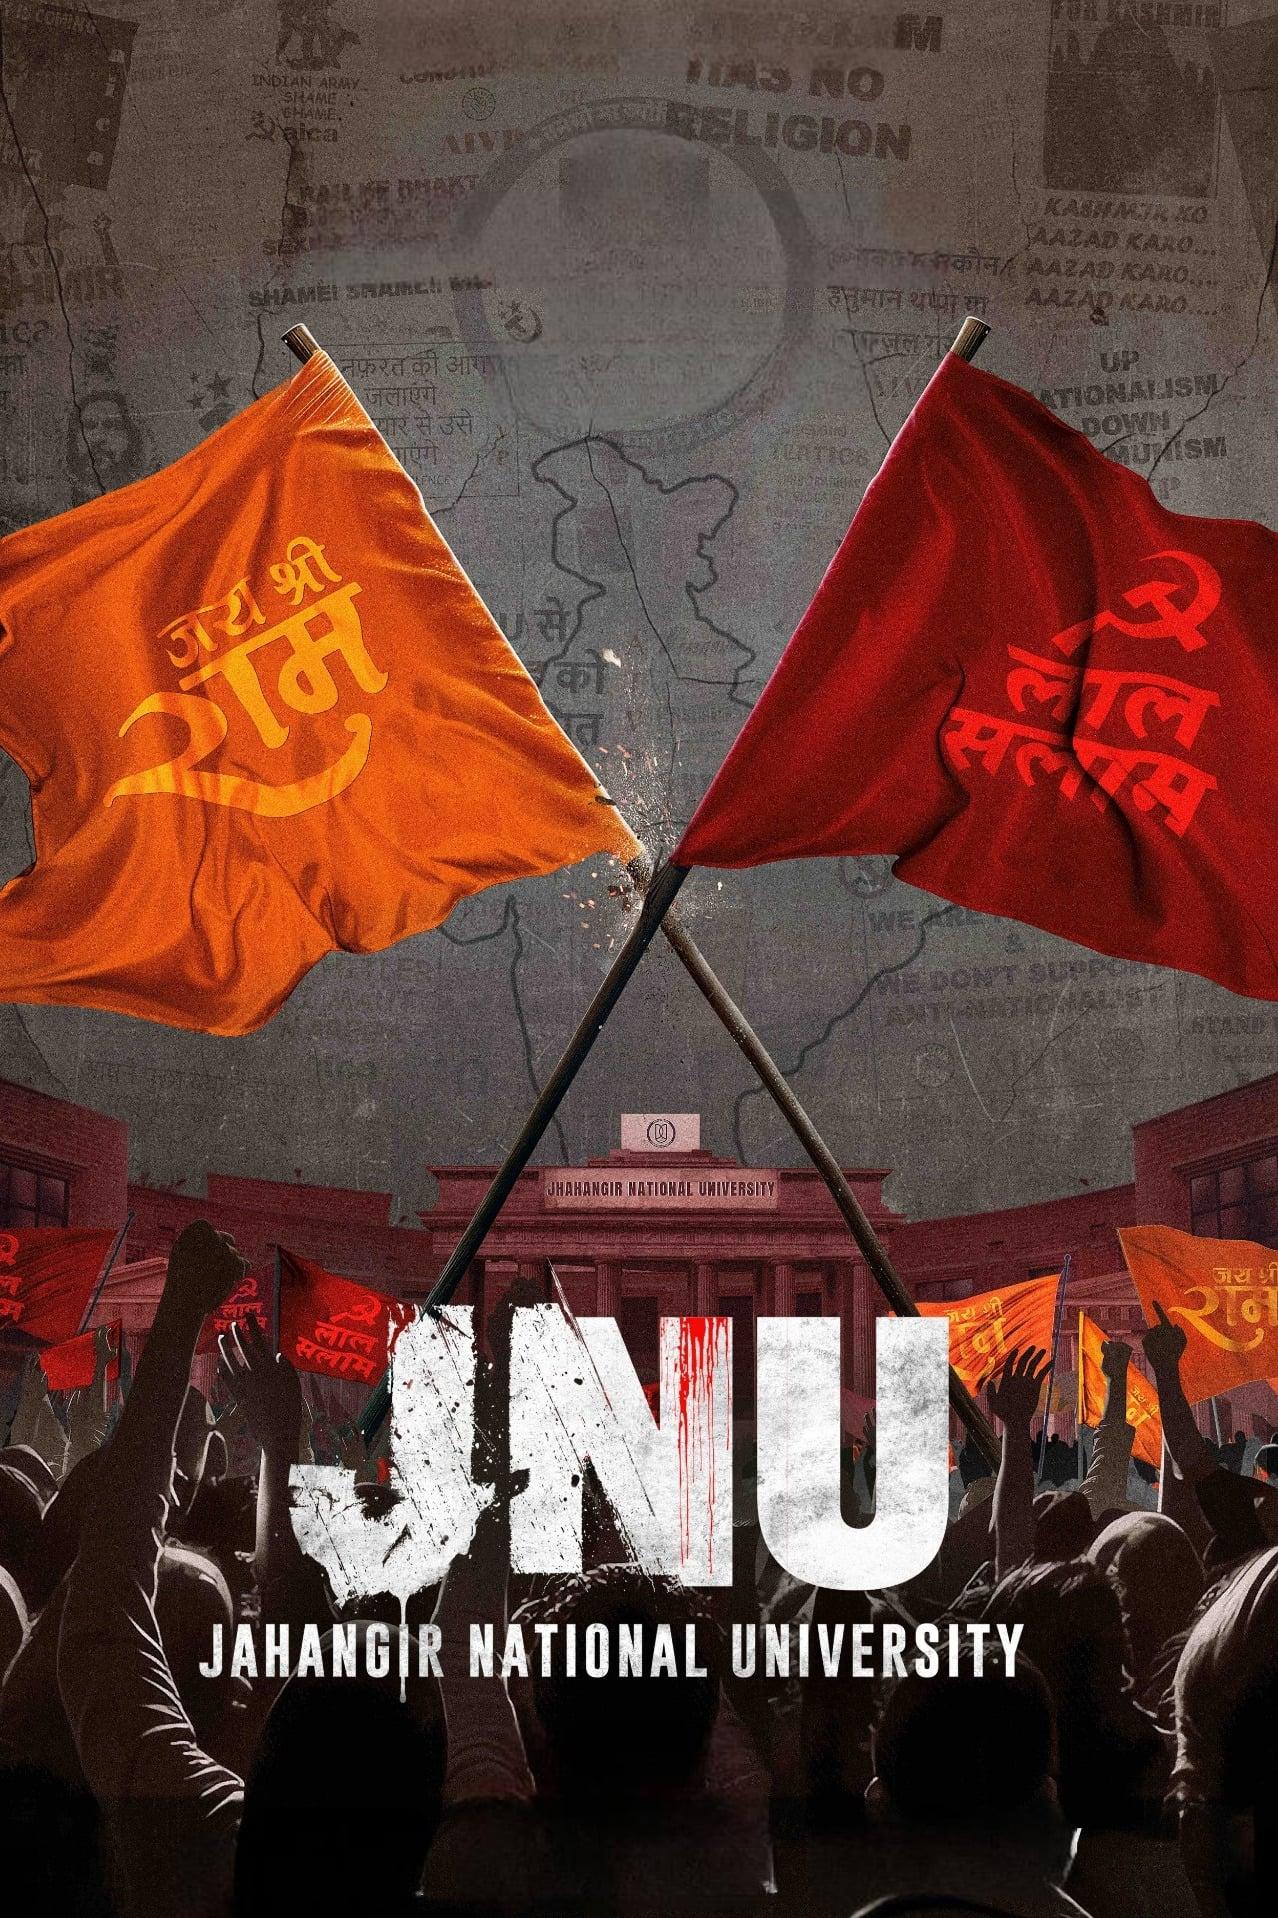 JNU: Jahangir National University poster